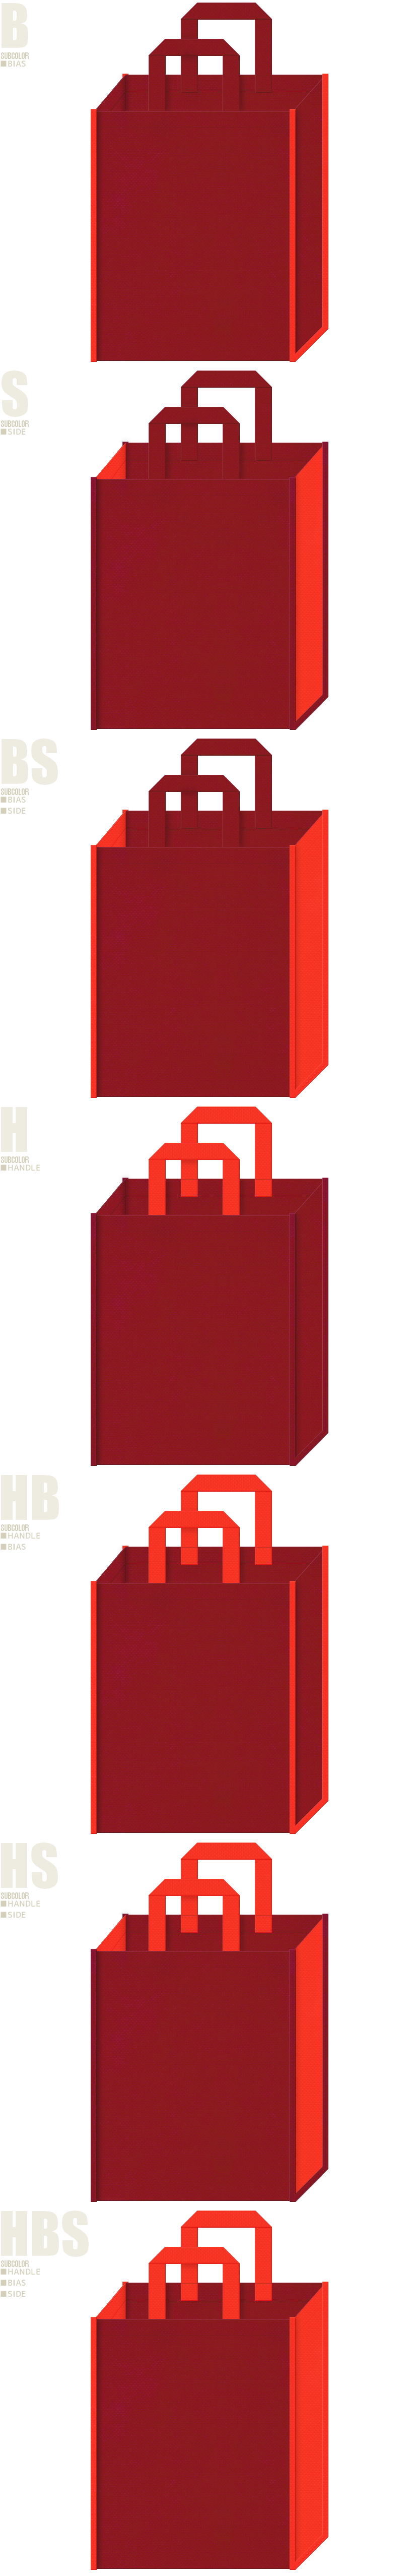 紅葉イメージの不織布バッグカラーシミュレーション：エンジ色とオレンジ色の組み合わせ7種